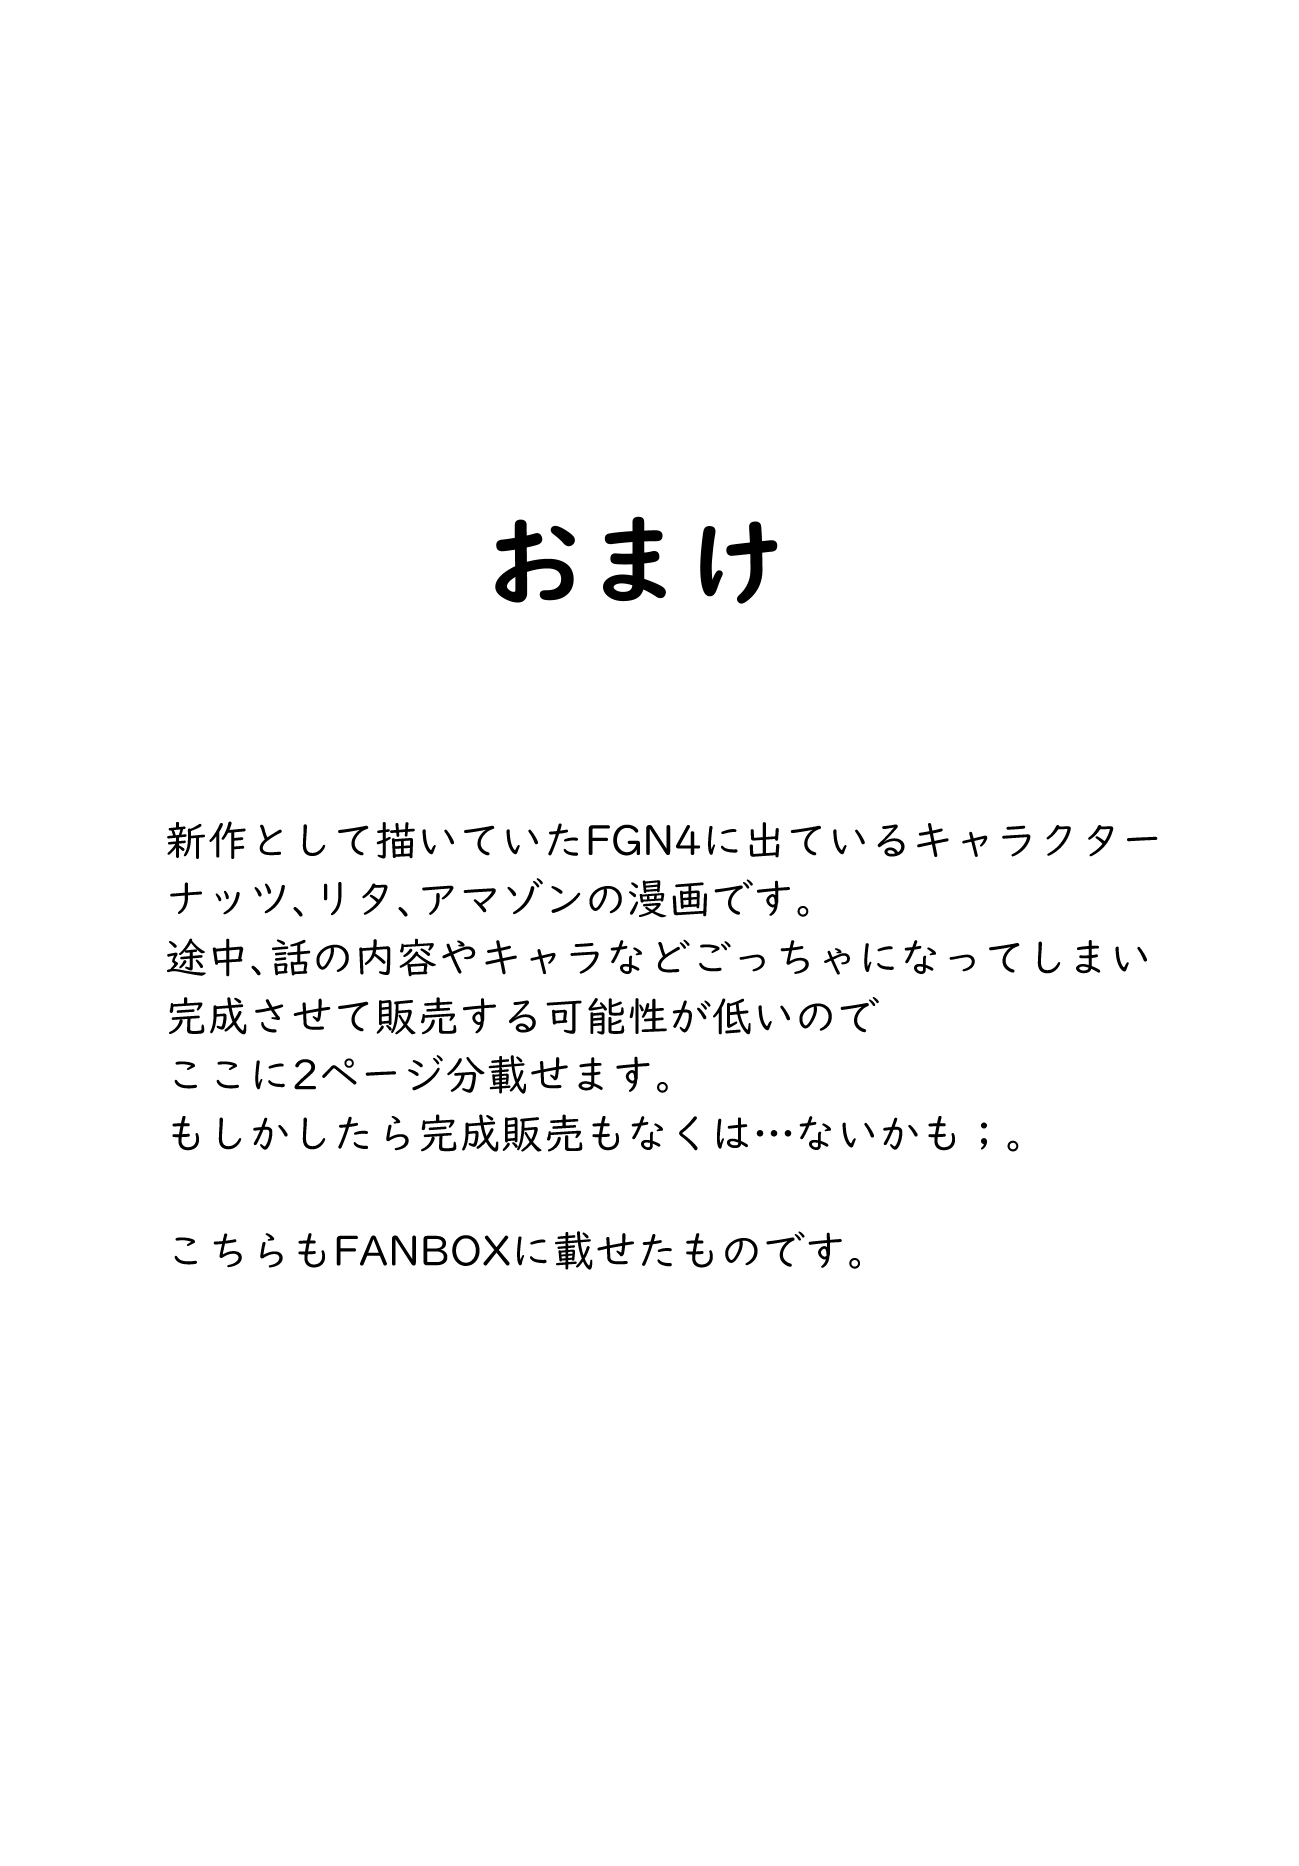 FANBOXまとめ_vol.4